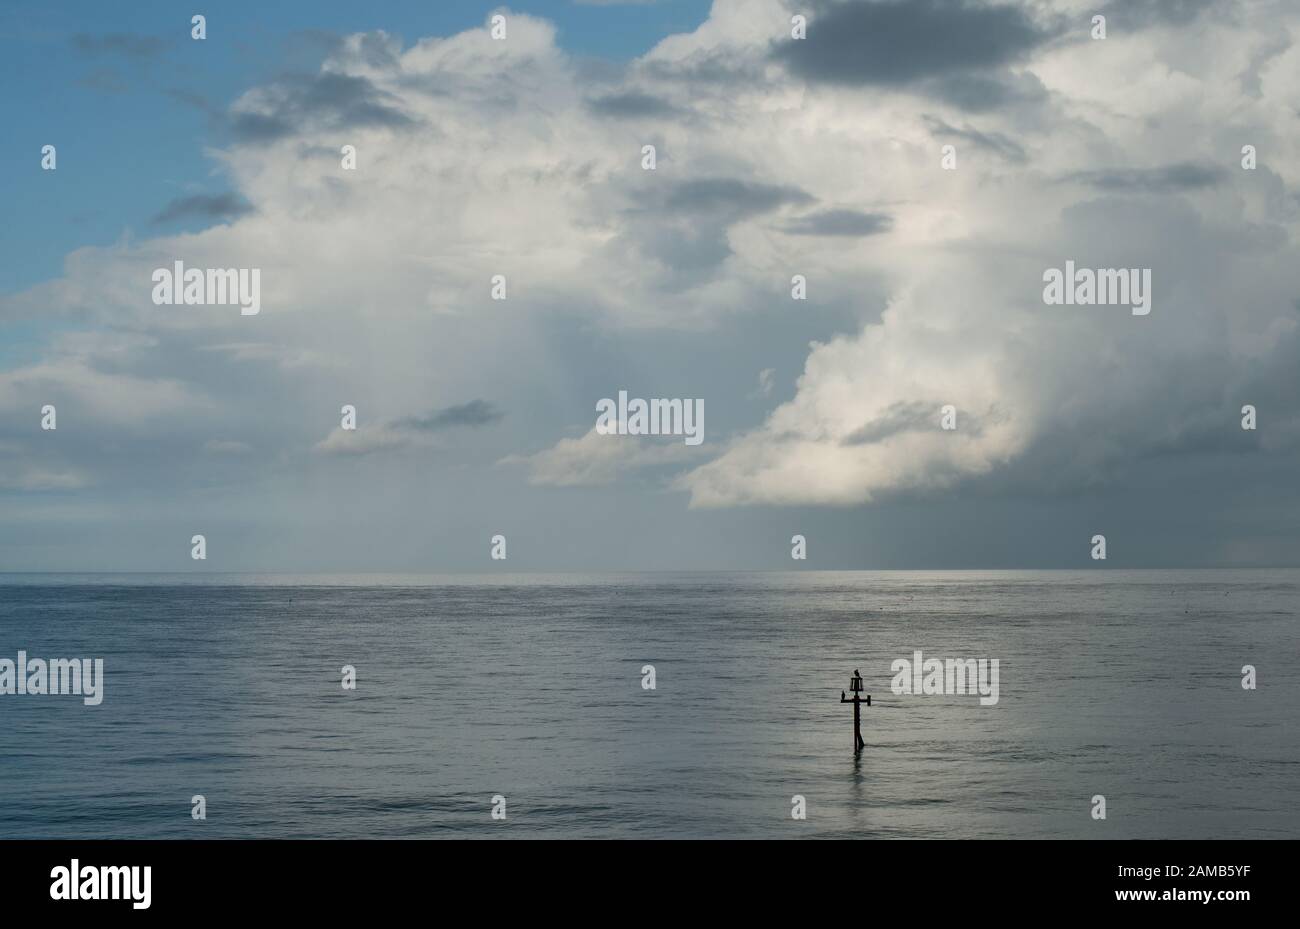 Una escena minimalista clásica de mar, cielo azul horizonte y suaves nubes en movimiento sin distracciones atrapadas en la preciosa luz Foto de stock